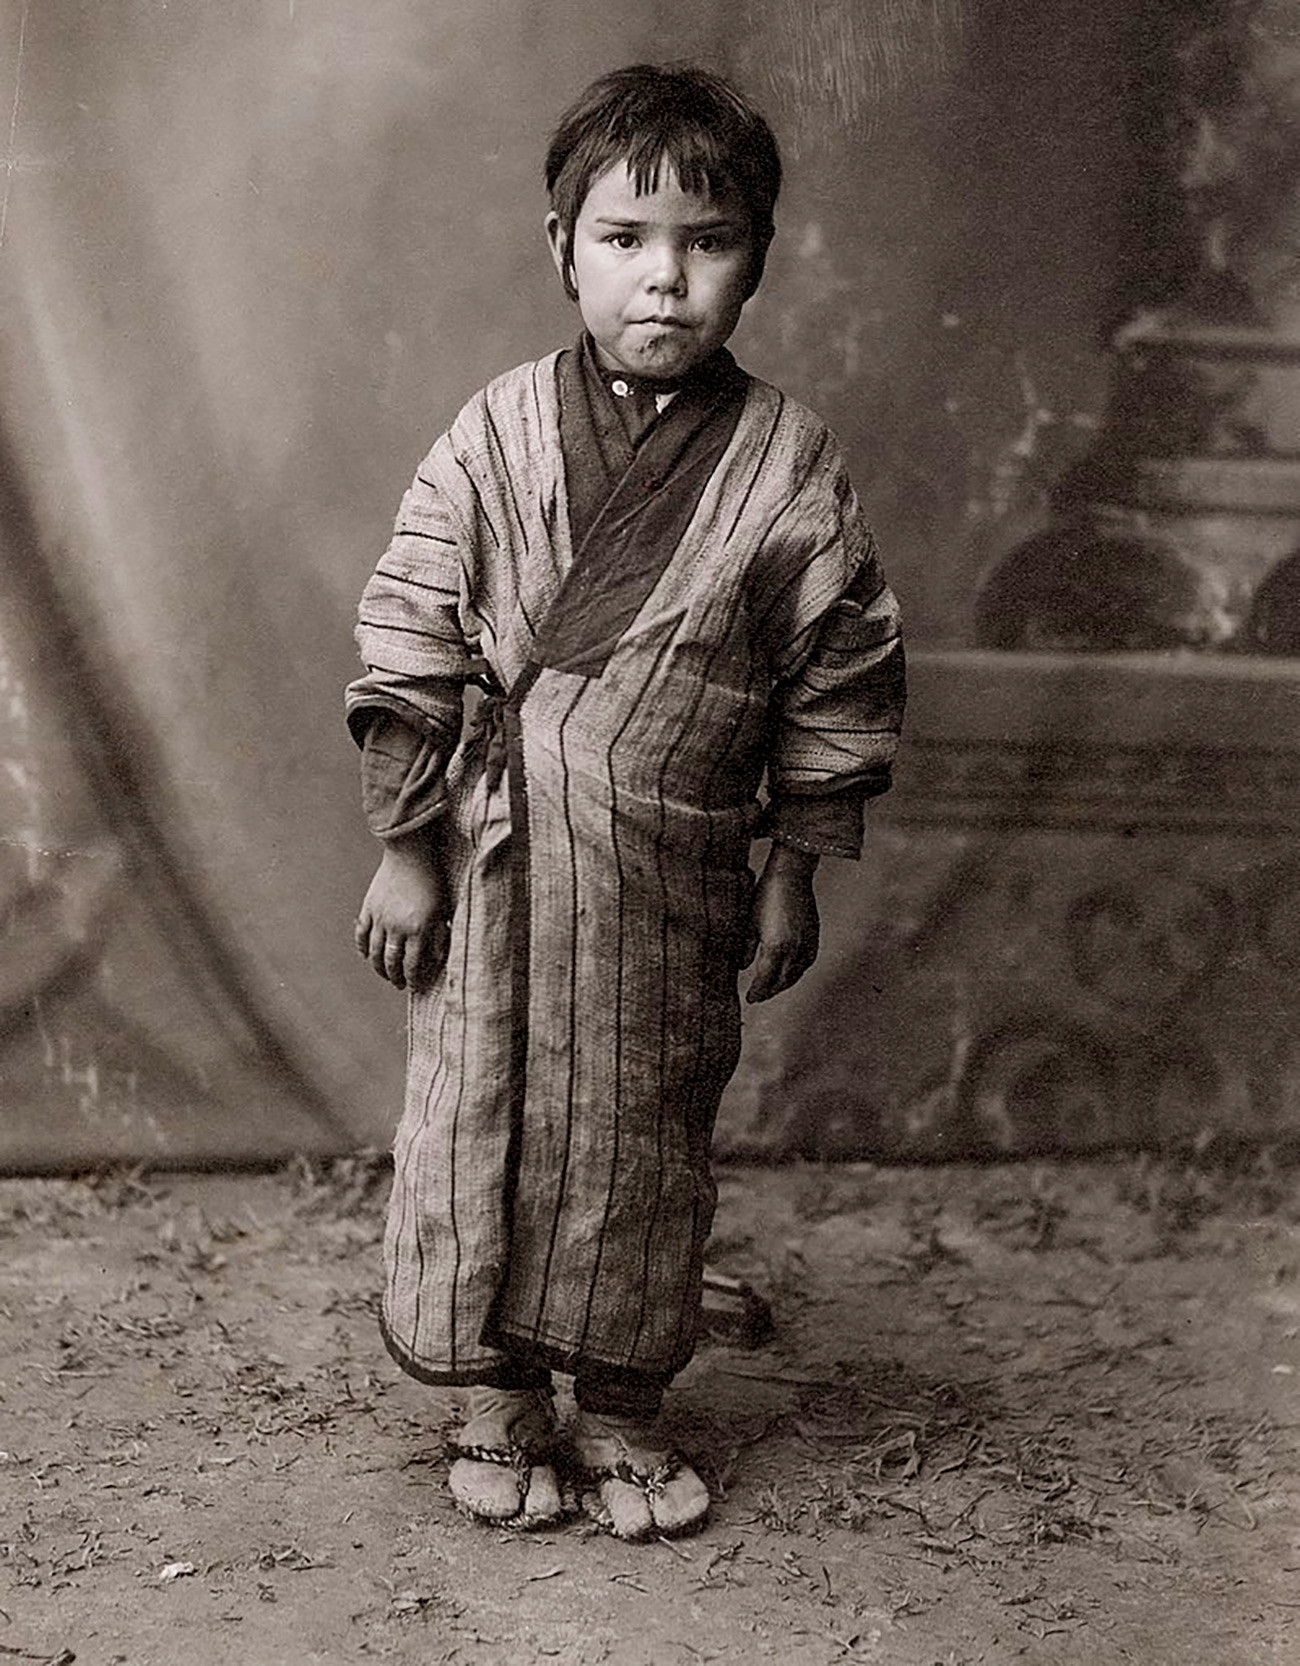 Dijete iz naroda Ainu.

